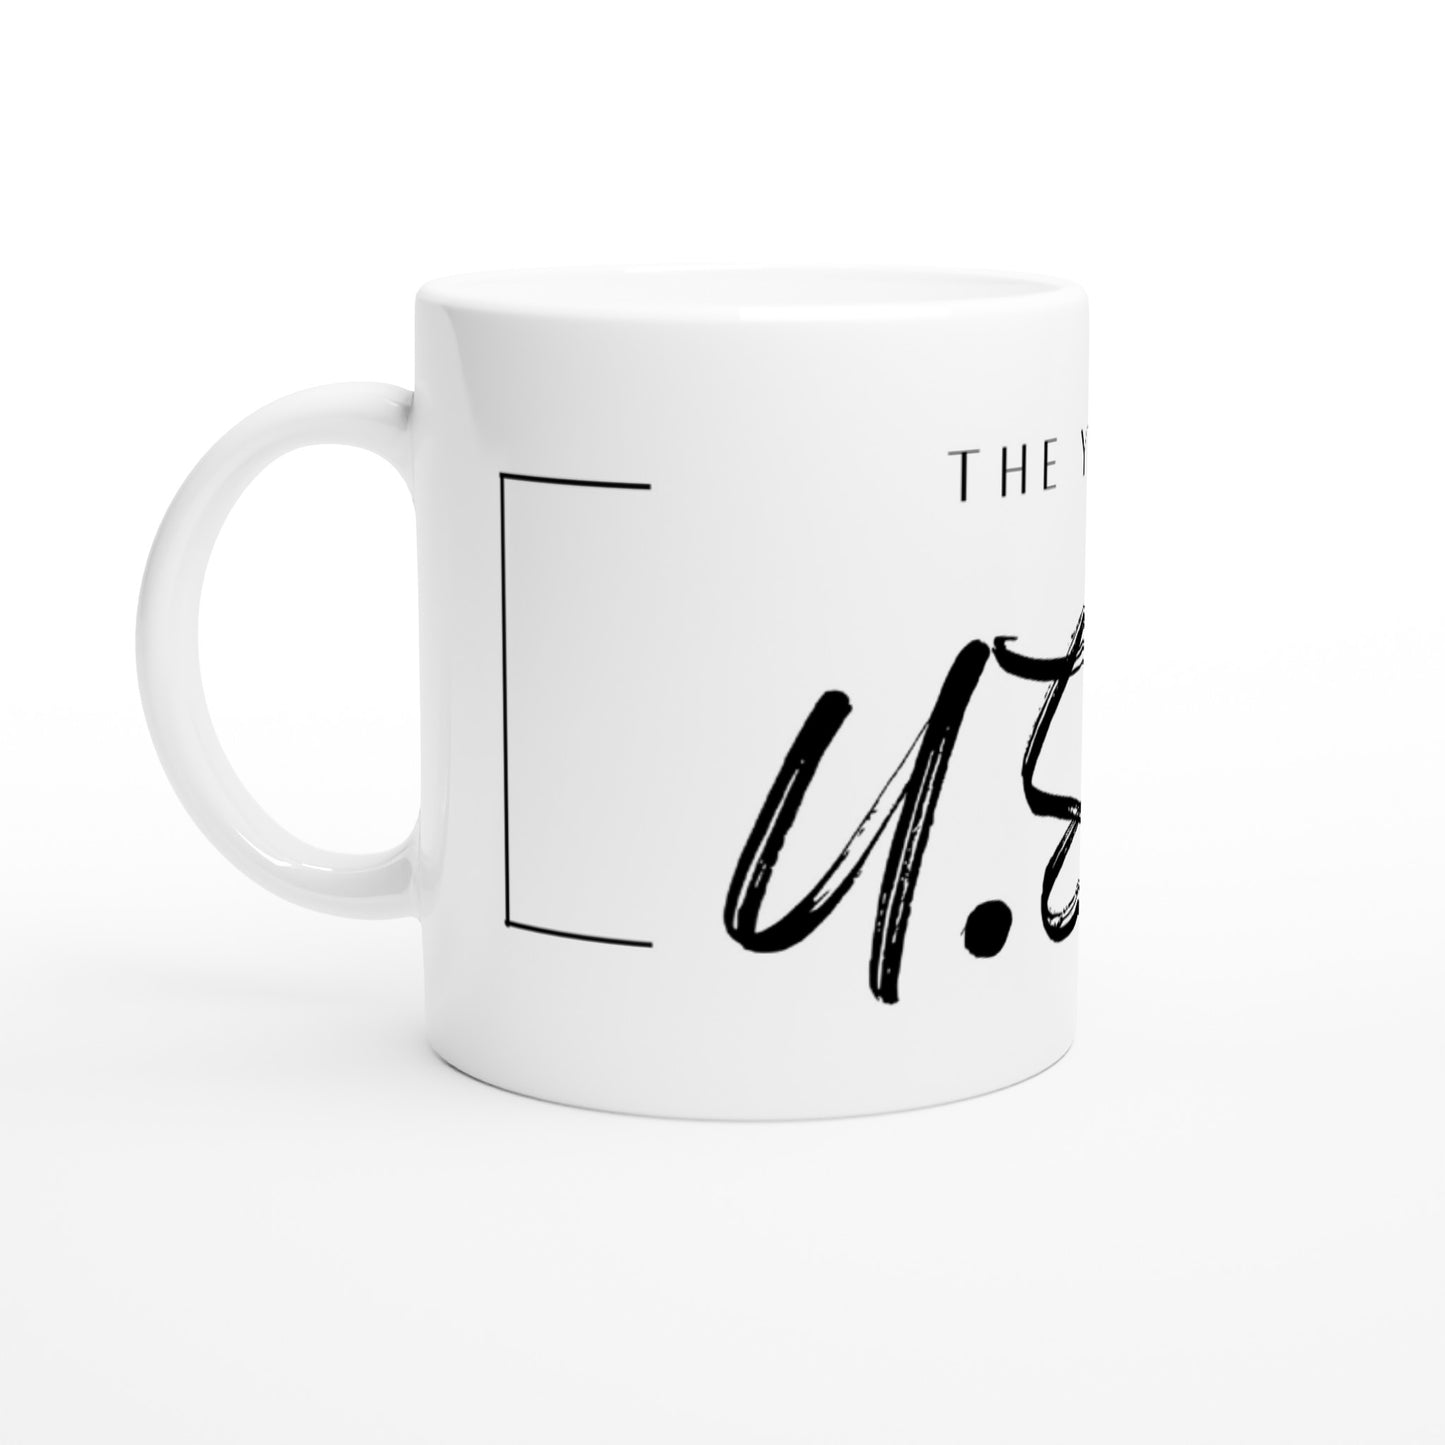 Yanks - White 11oz Ceramic Mug